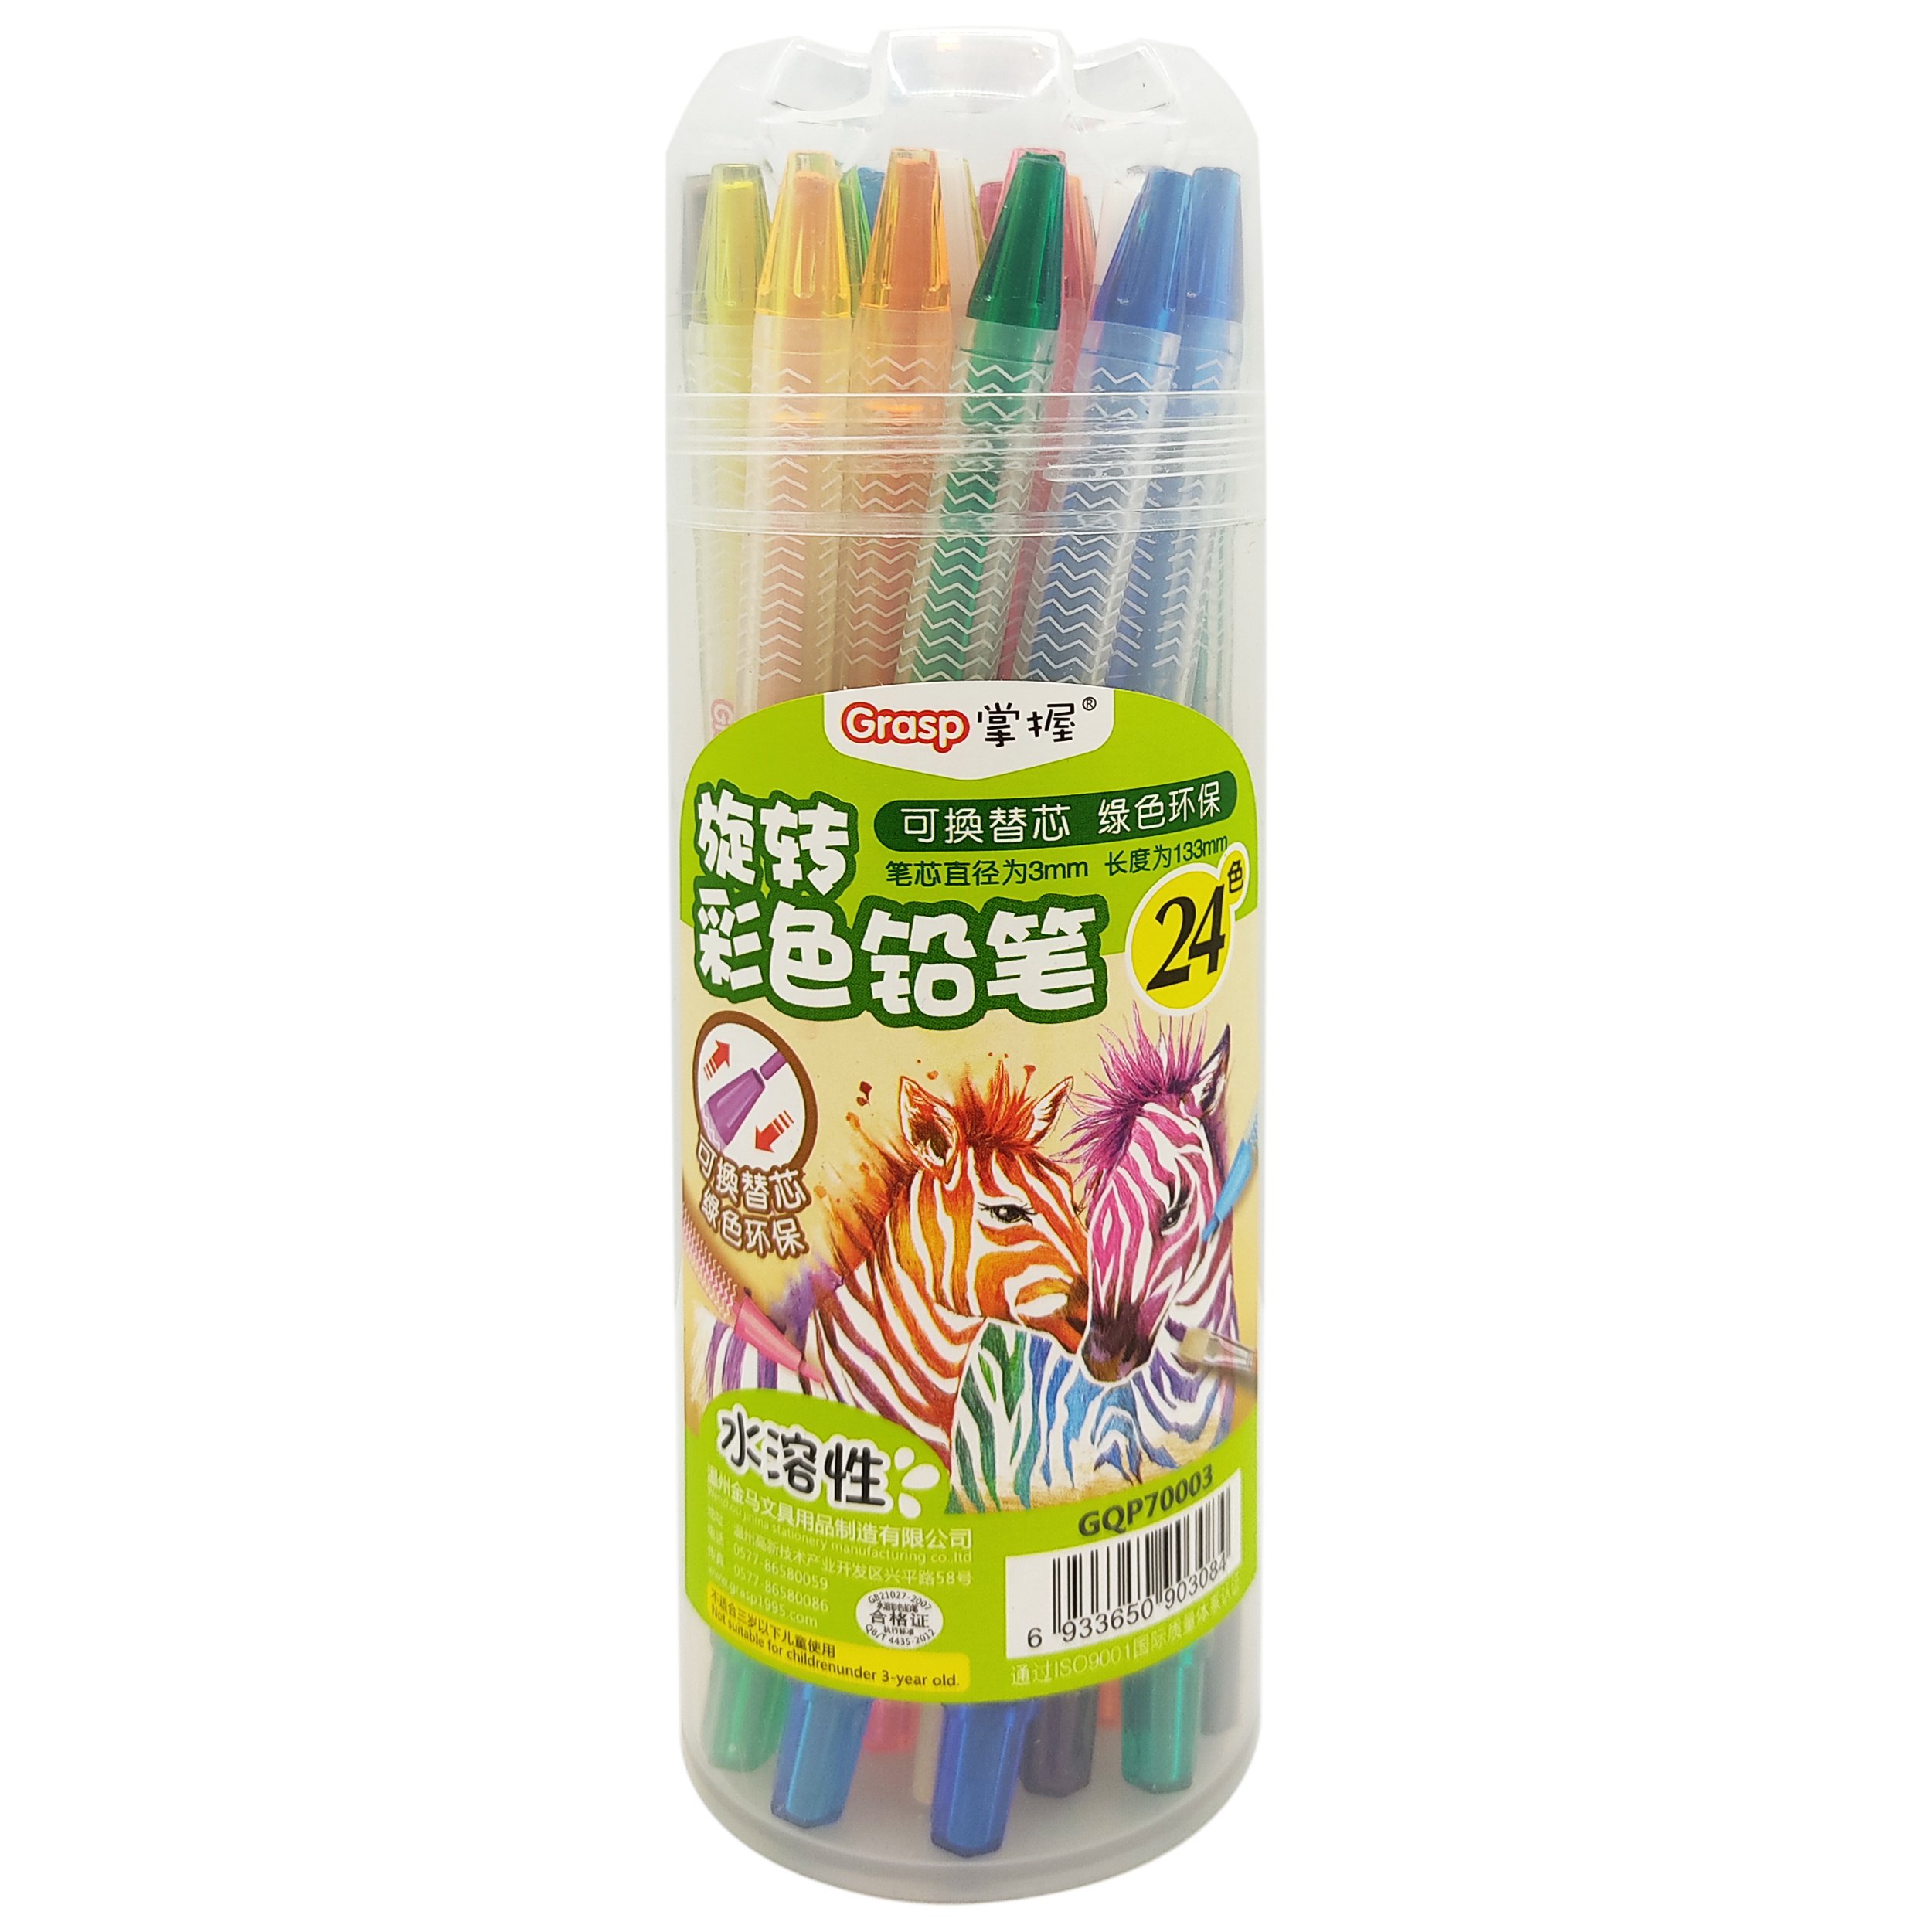 مداد شمعی 24 رنگ گرسپ طرح زبرا کد GQP70003